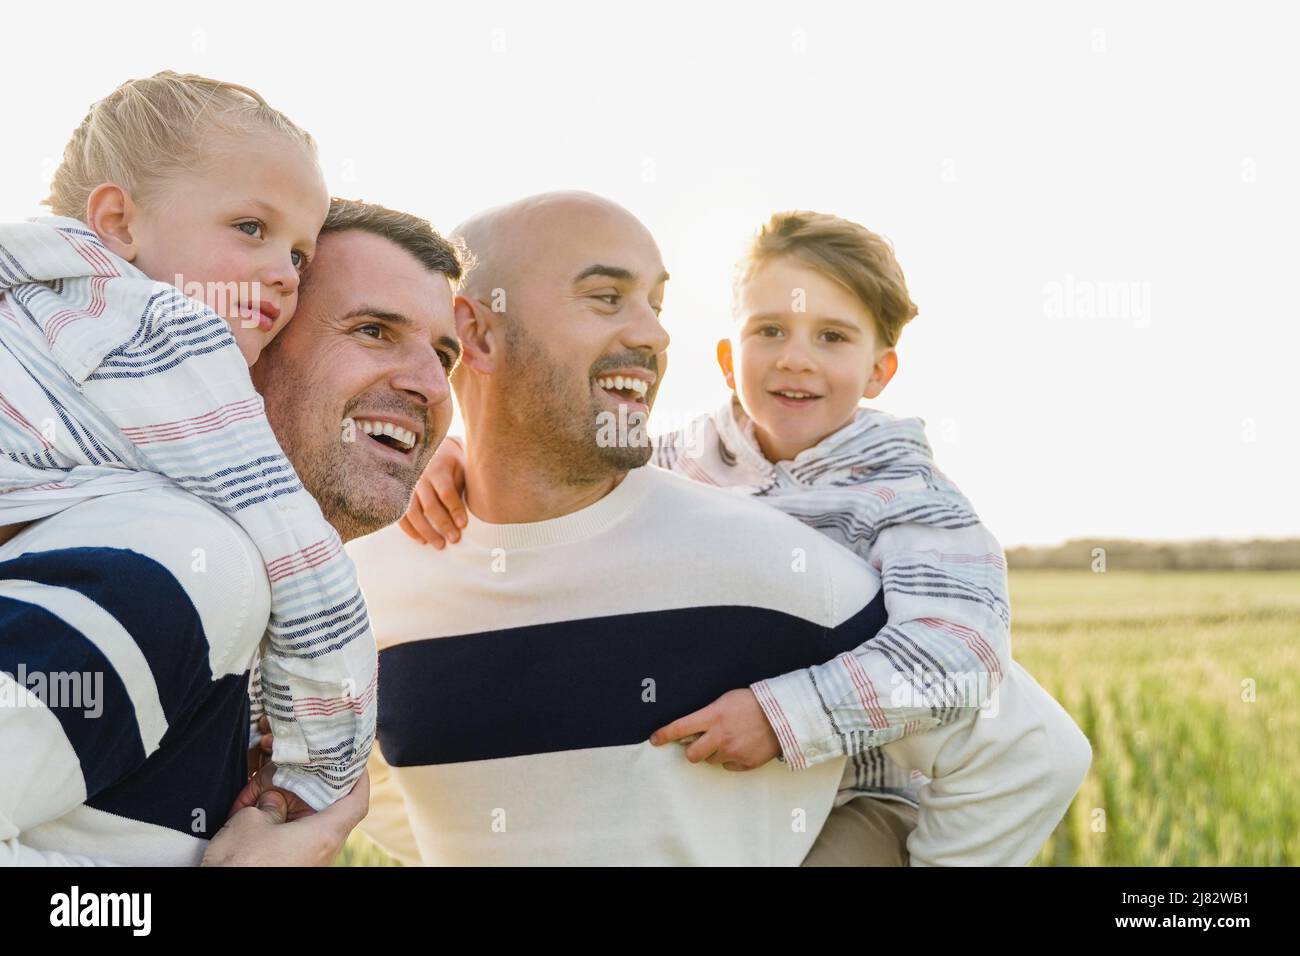 Les parents homosexuels de sexe masculin s'amusent avec leurs fils à l'extérieur en été - diversité LGBT concept de famille - Focus sur le visage gauche de l'enfant Banque D'Images